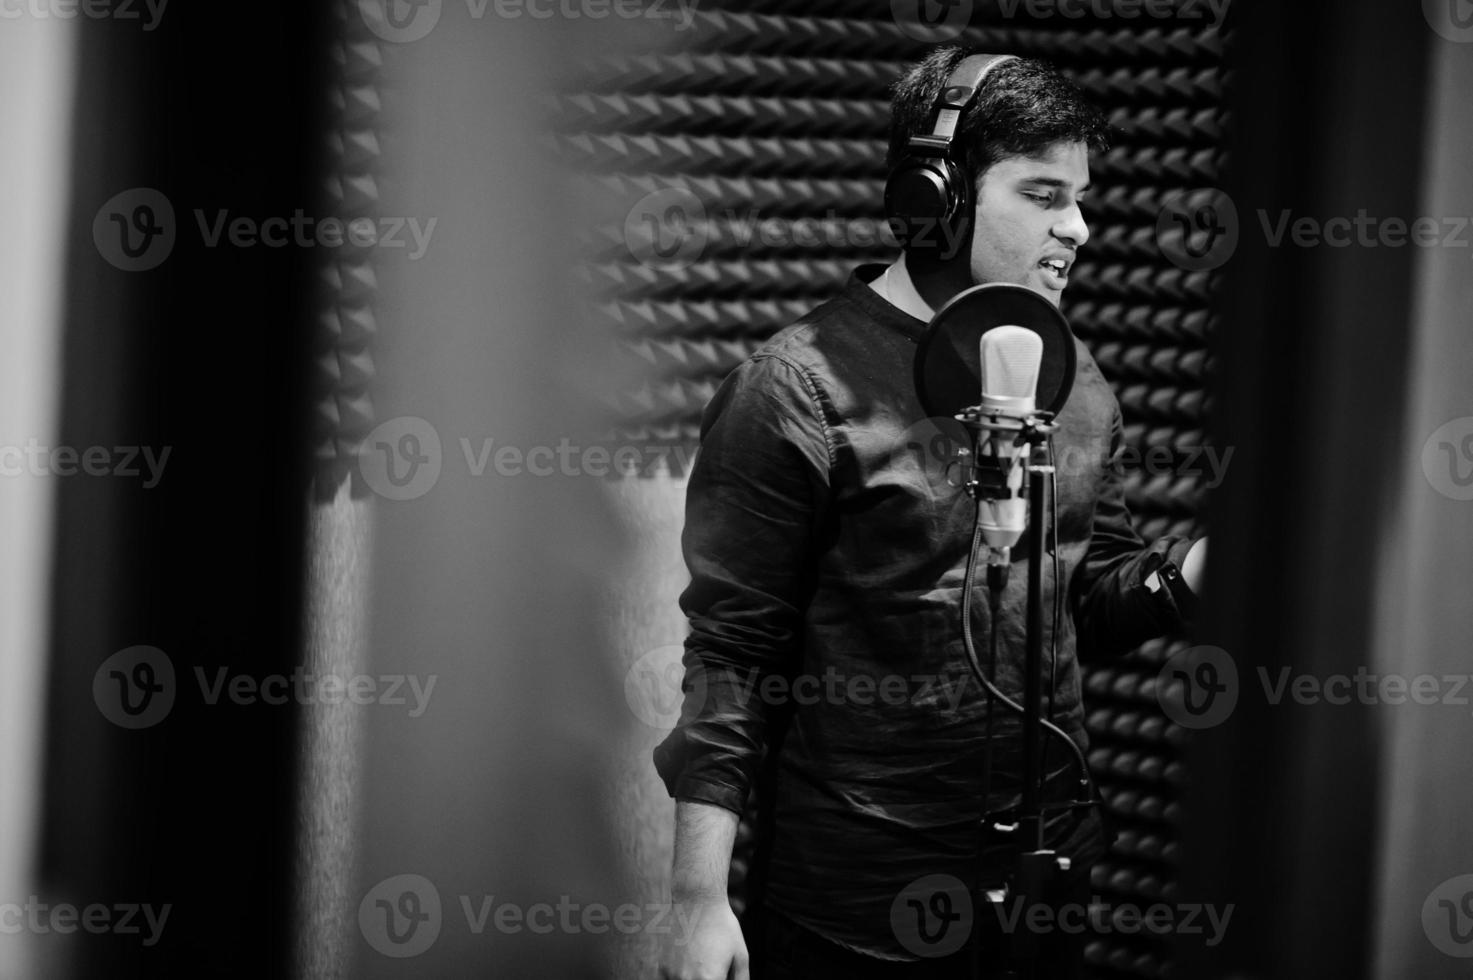 joven cantante asiático con micrófono grabando una canción en un estudio de grabación de música. foto